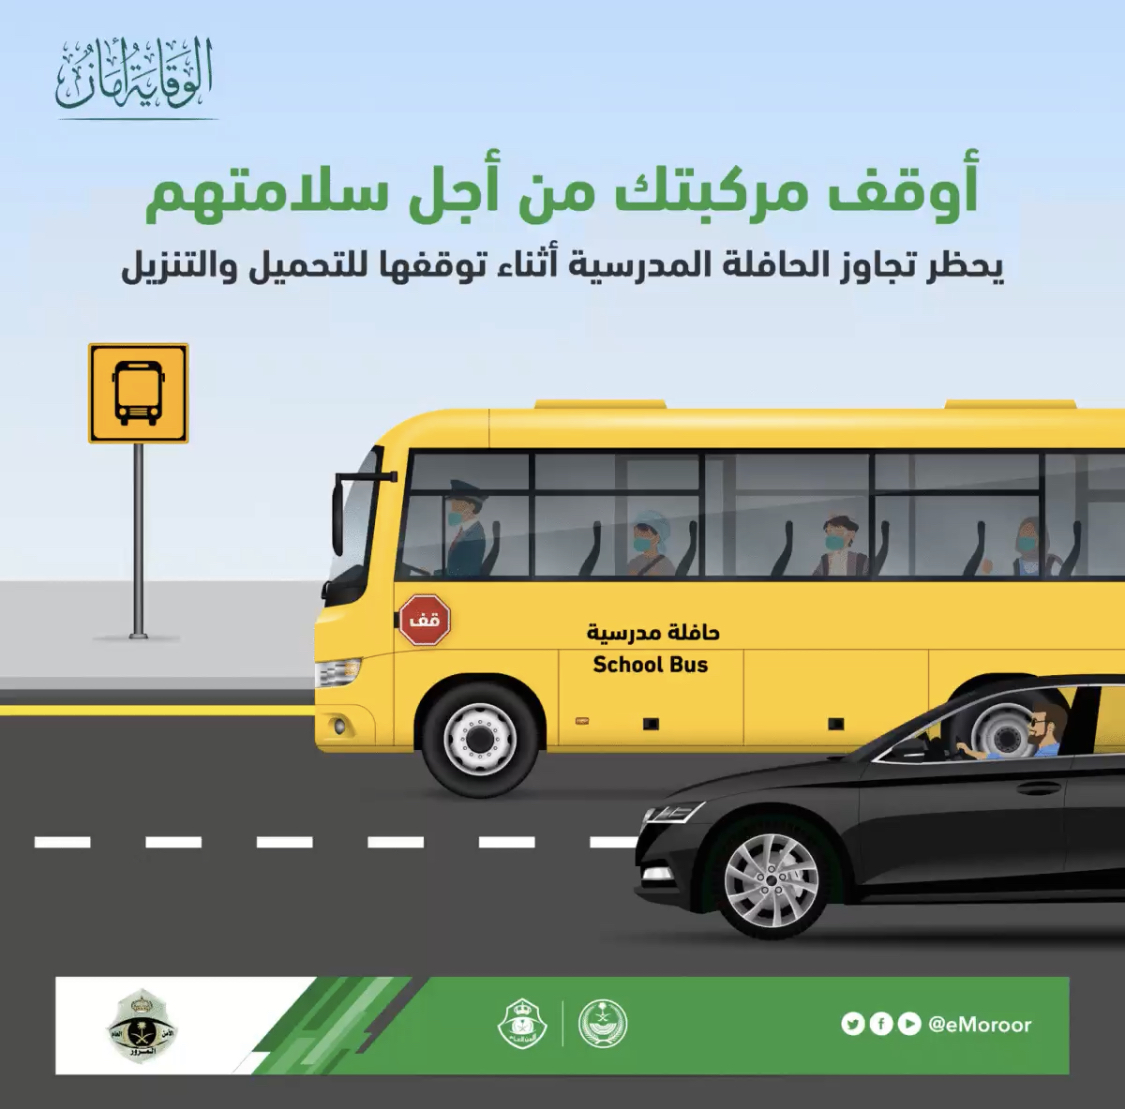 المرور يحذر من تجاوز حافلات النقل المدرسي في حالتين